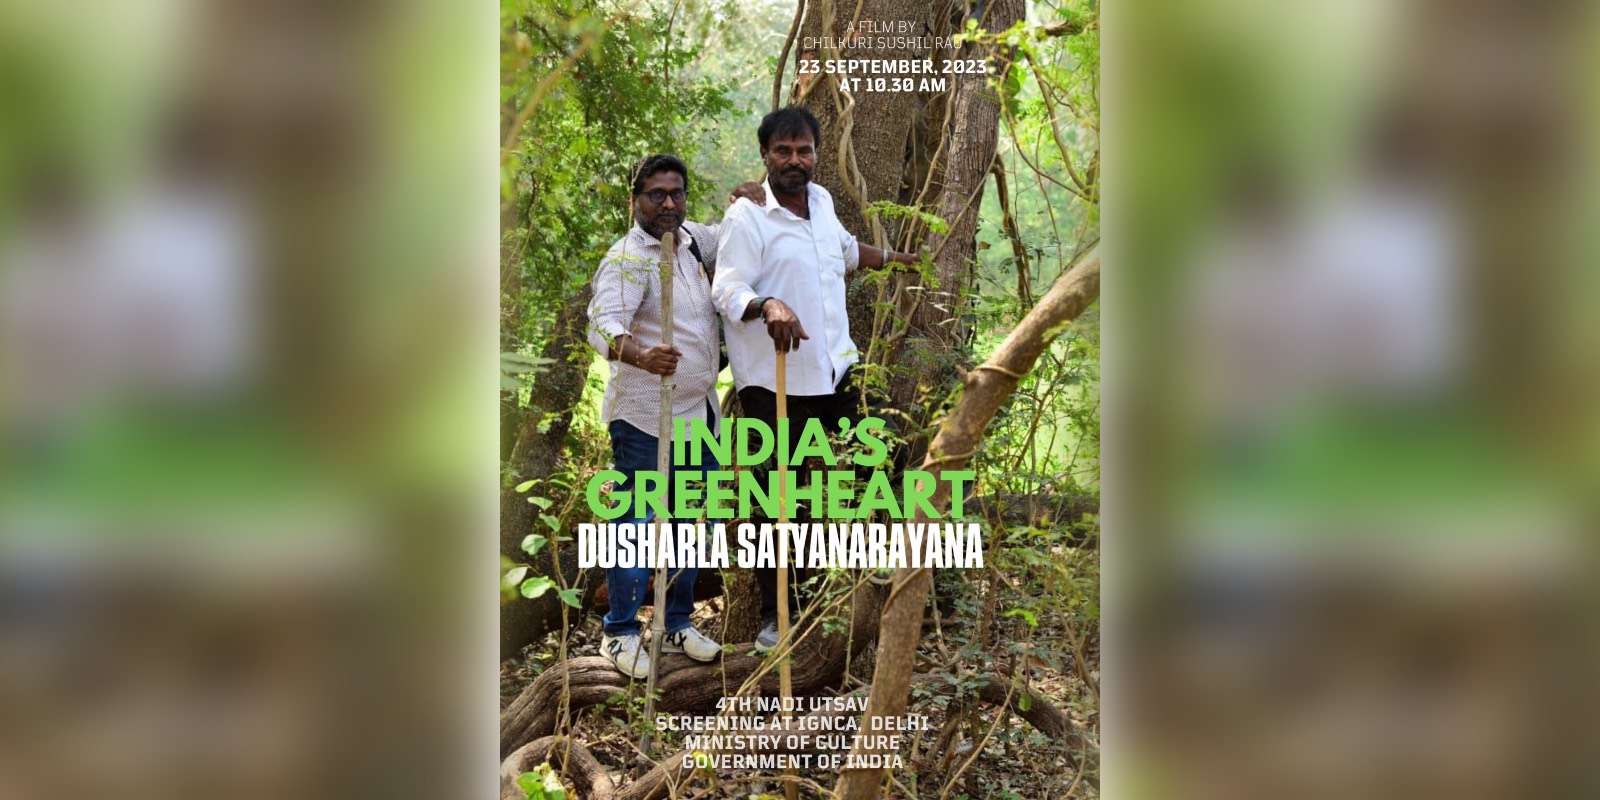 A poster of GreenHeart Dusharla Satyanarayana